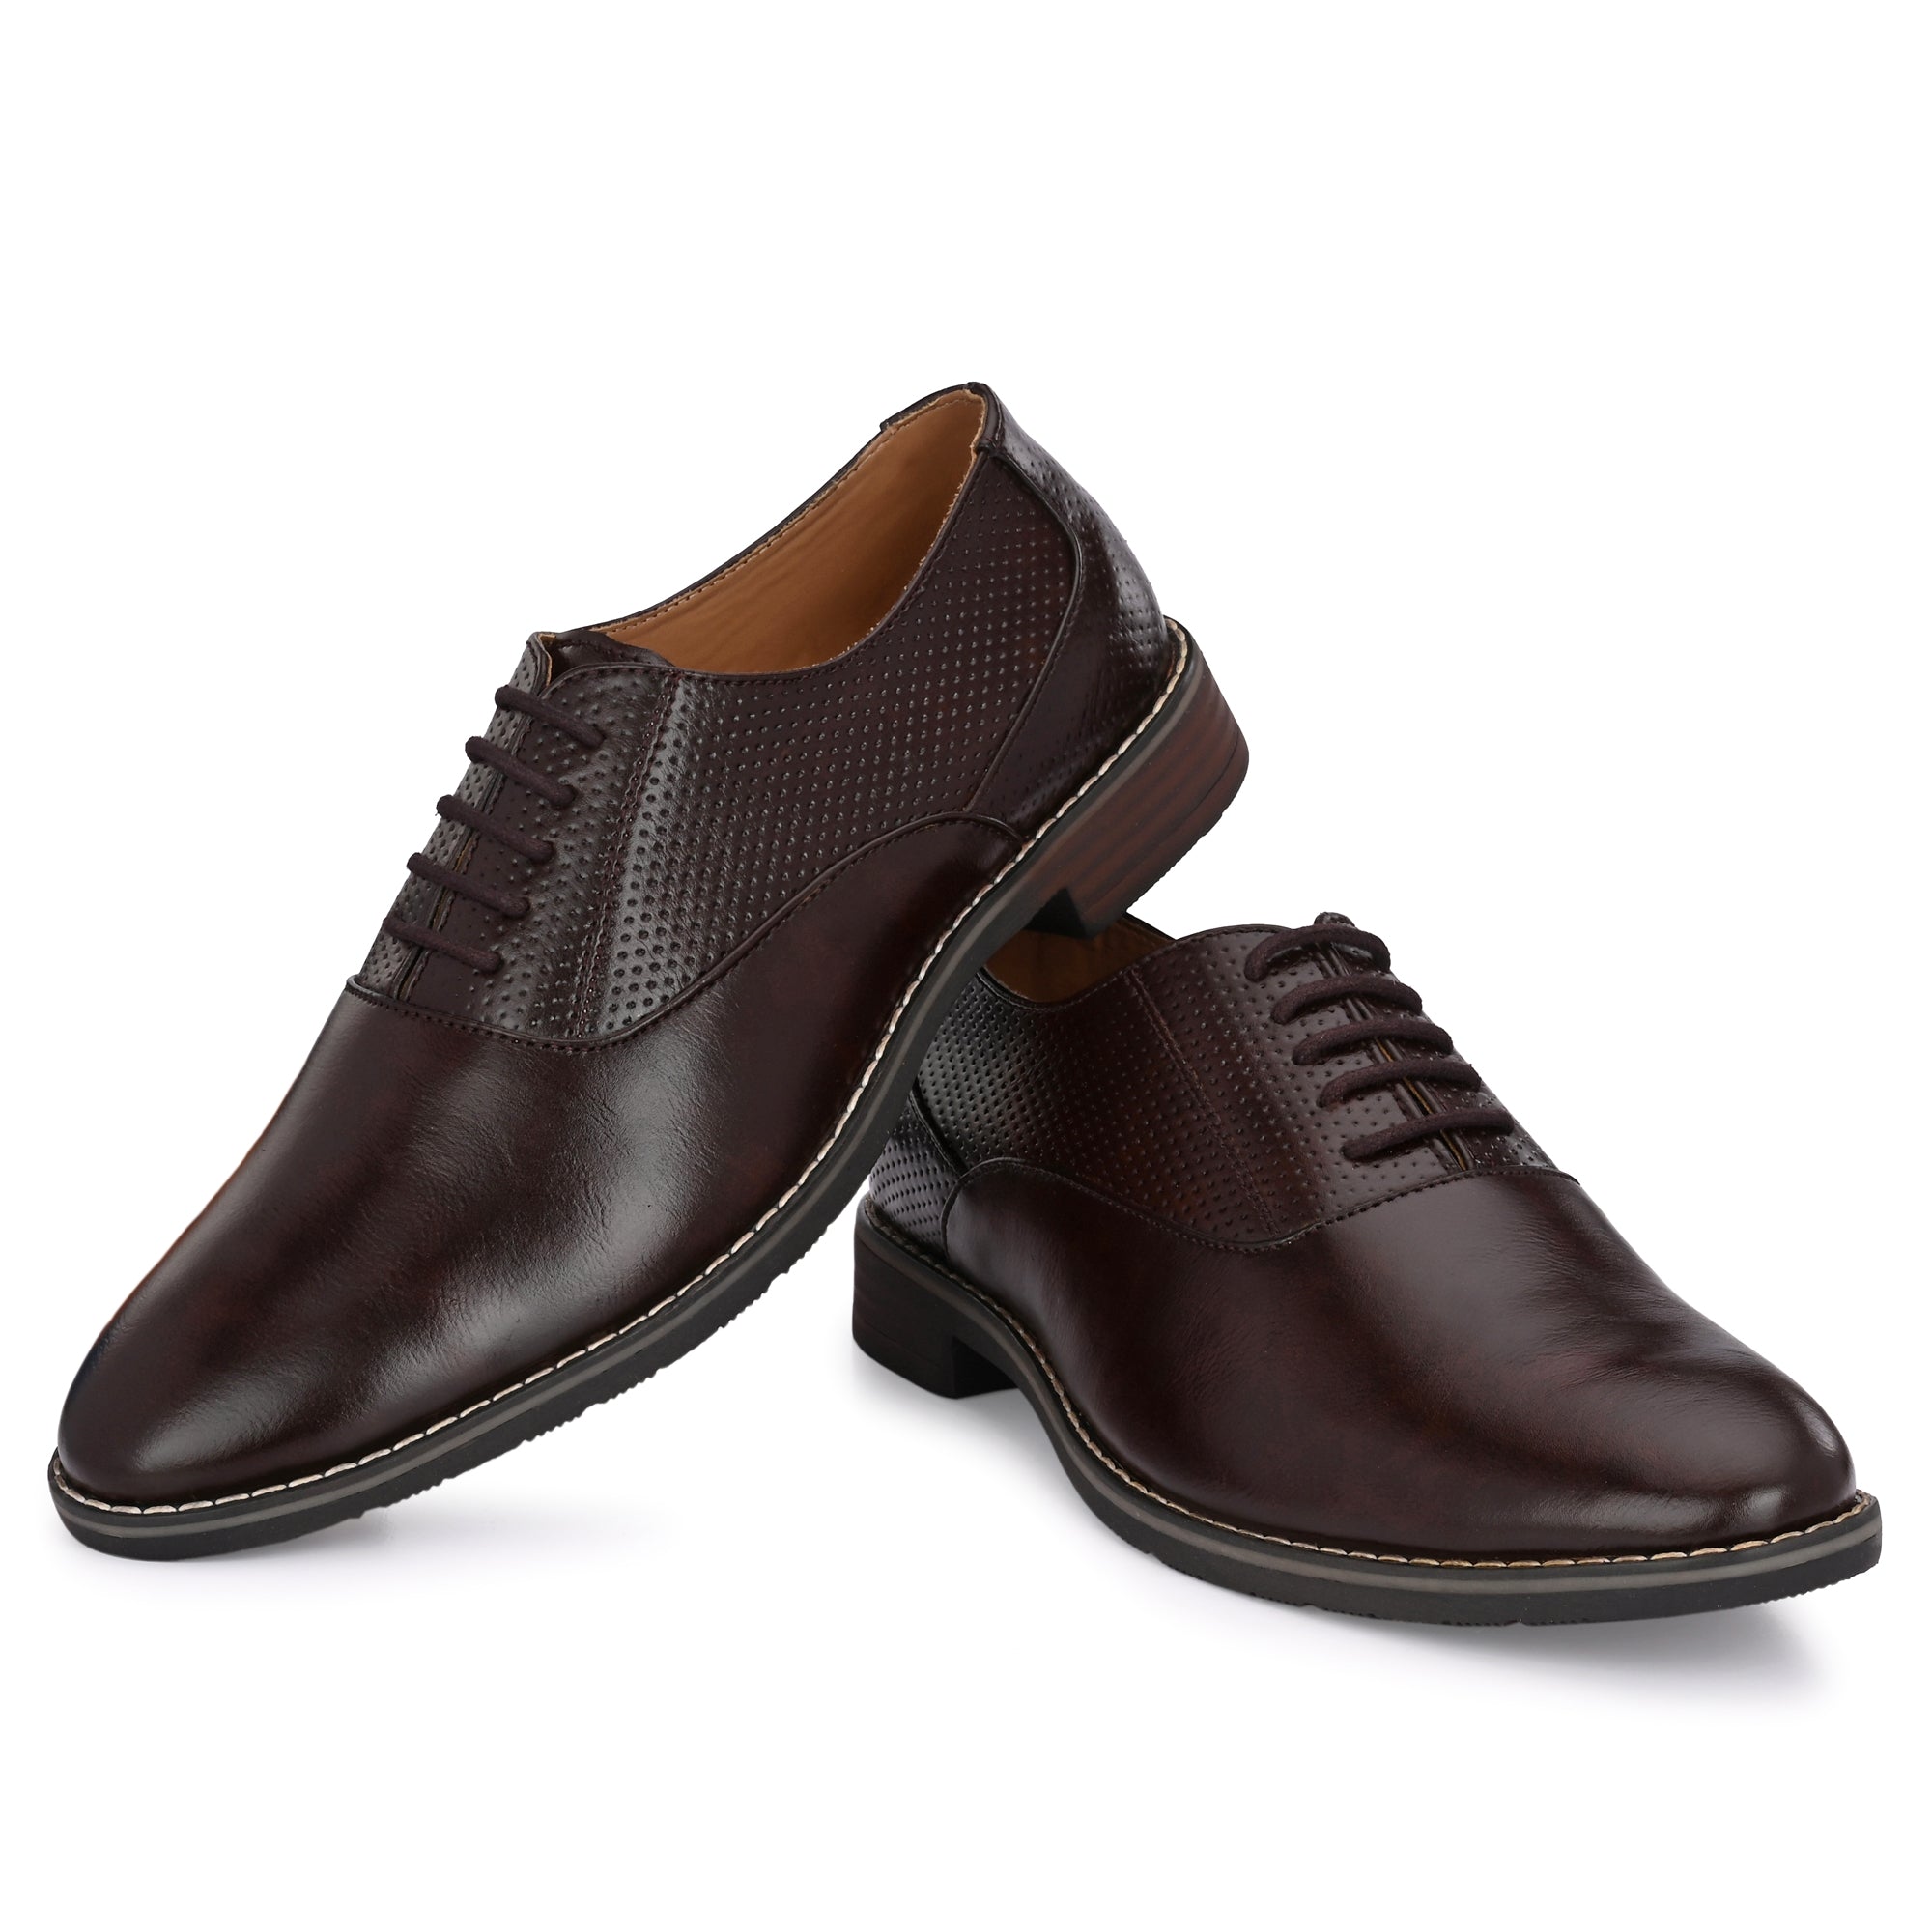 brown-formal-lace-up-attitudist-shoes-for-men-sp7b